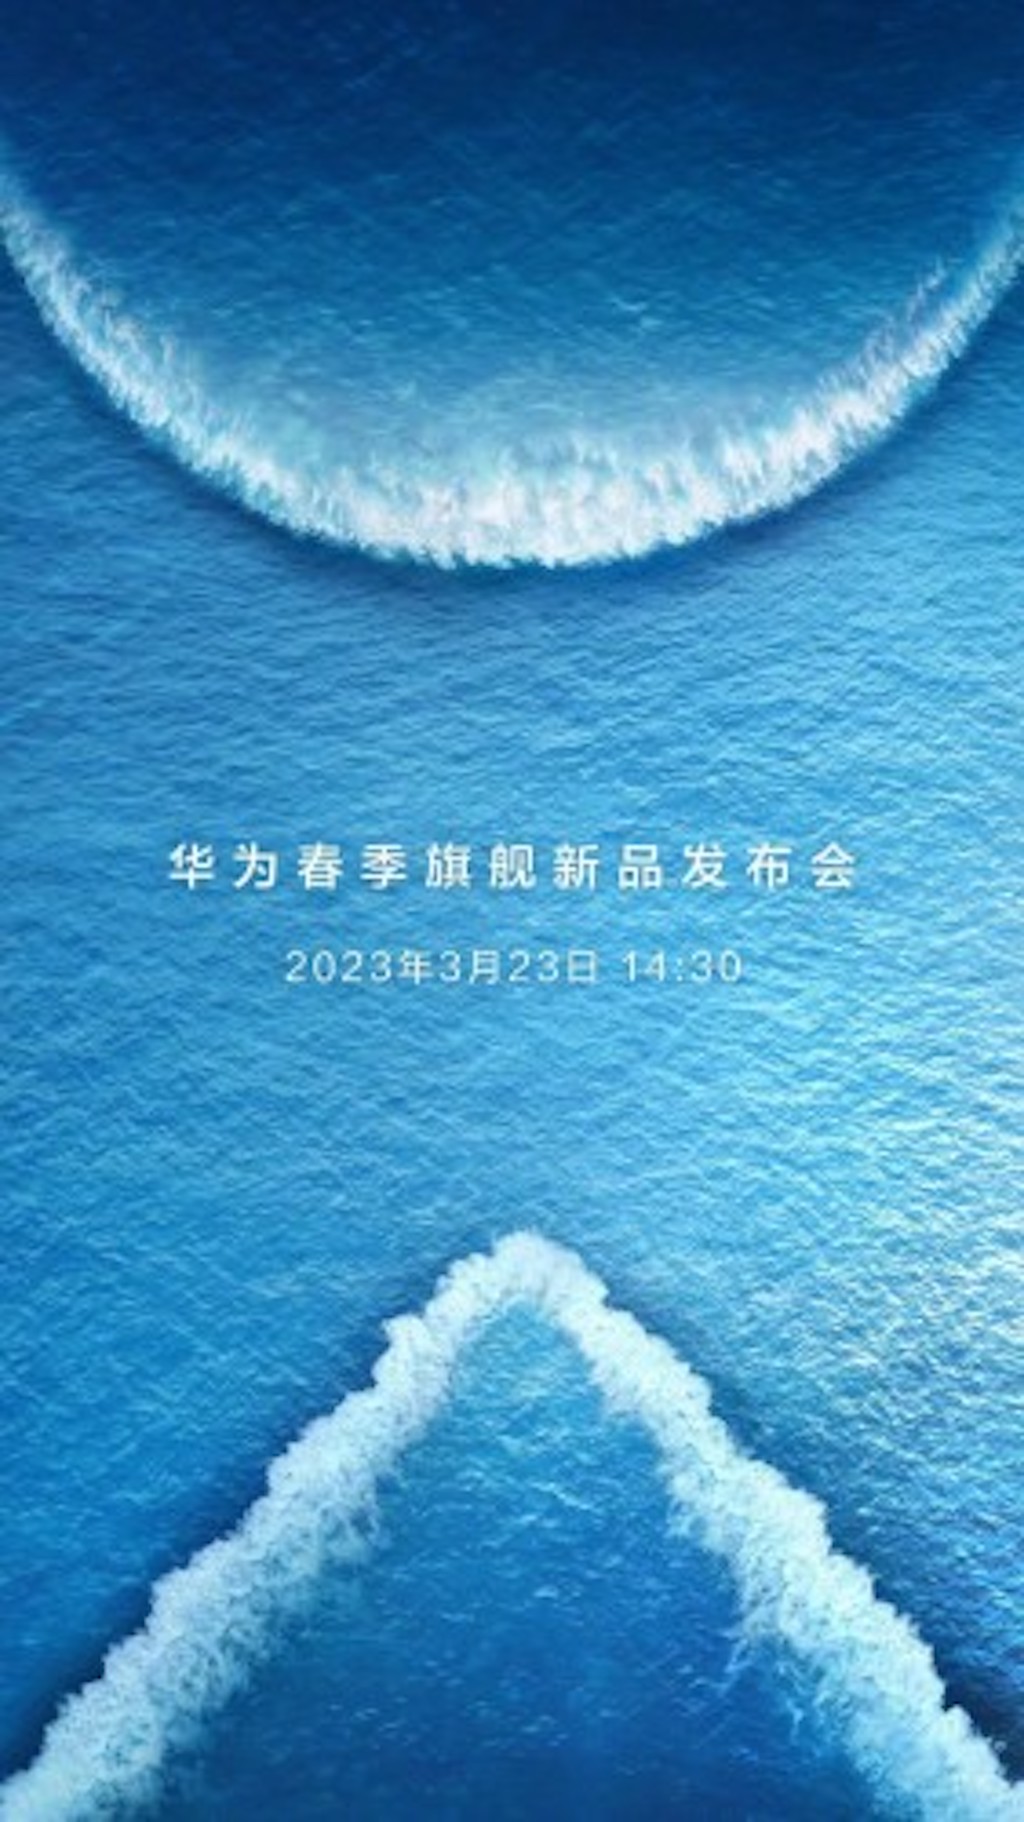 Chỉ còn hơn 1 tuần nữa, Huawei sẽ công bố smartphone P60 Series và điện thoại gập Mate X3 mới